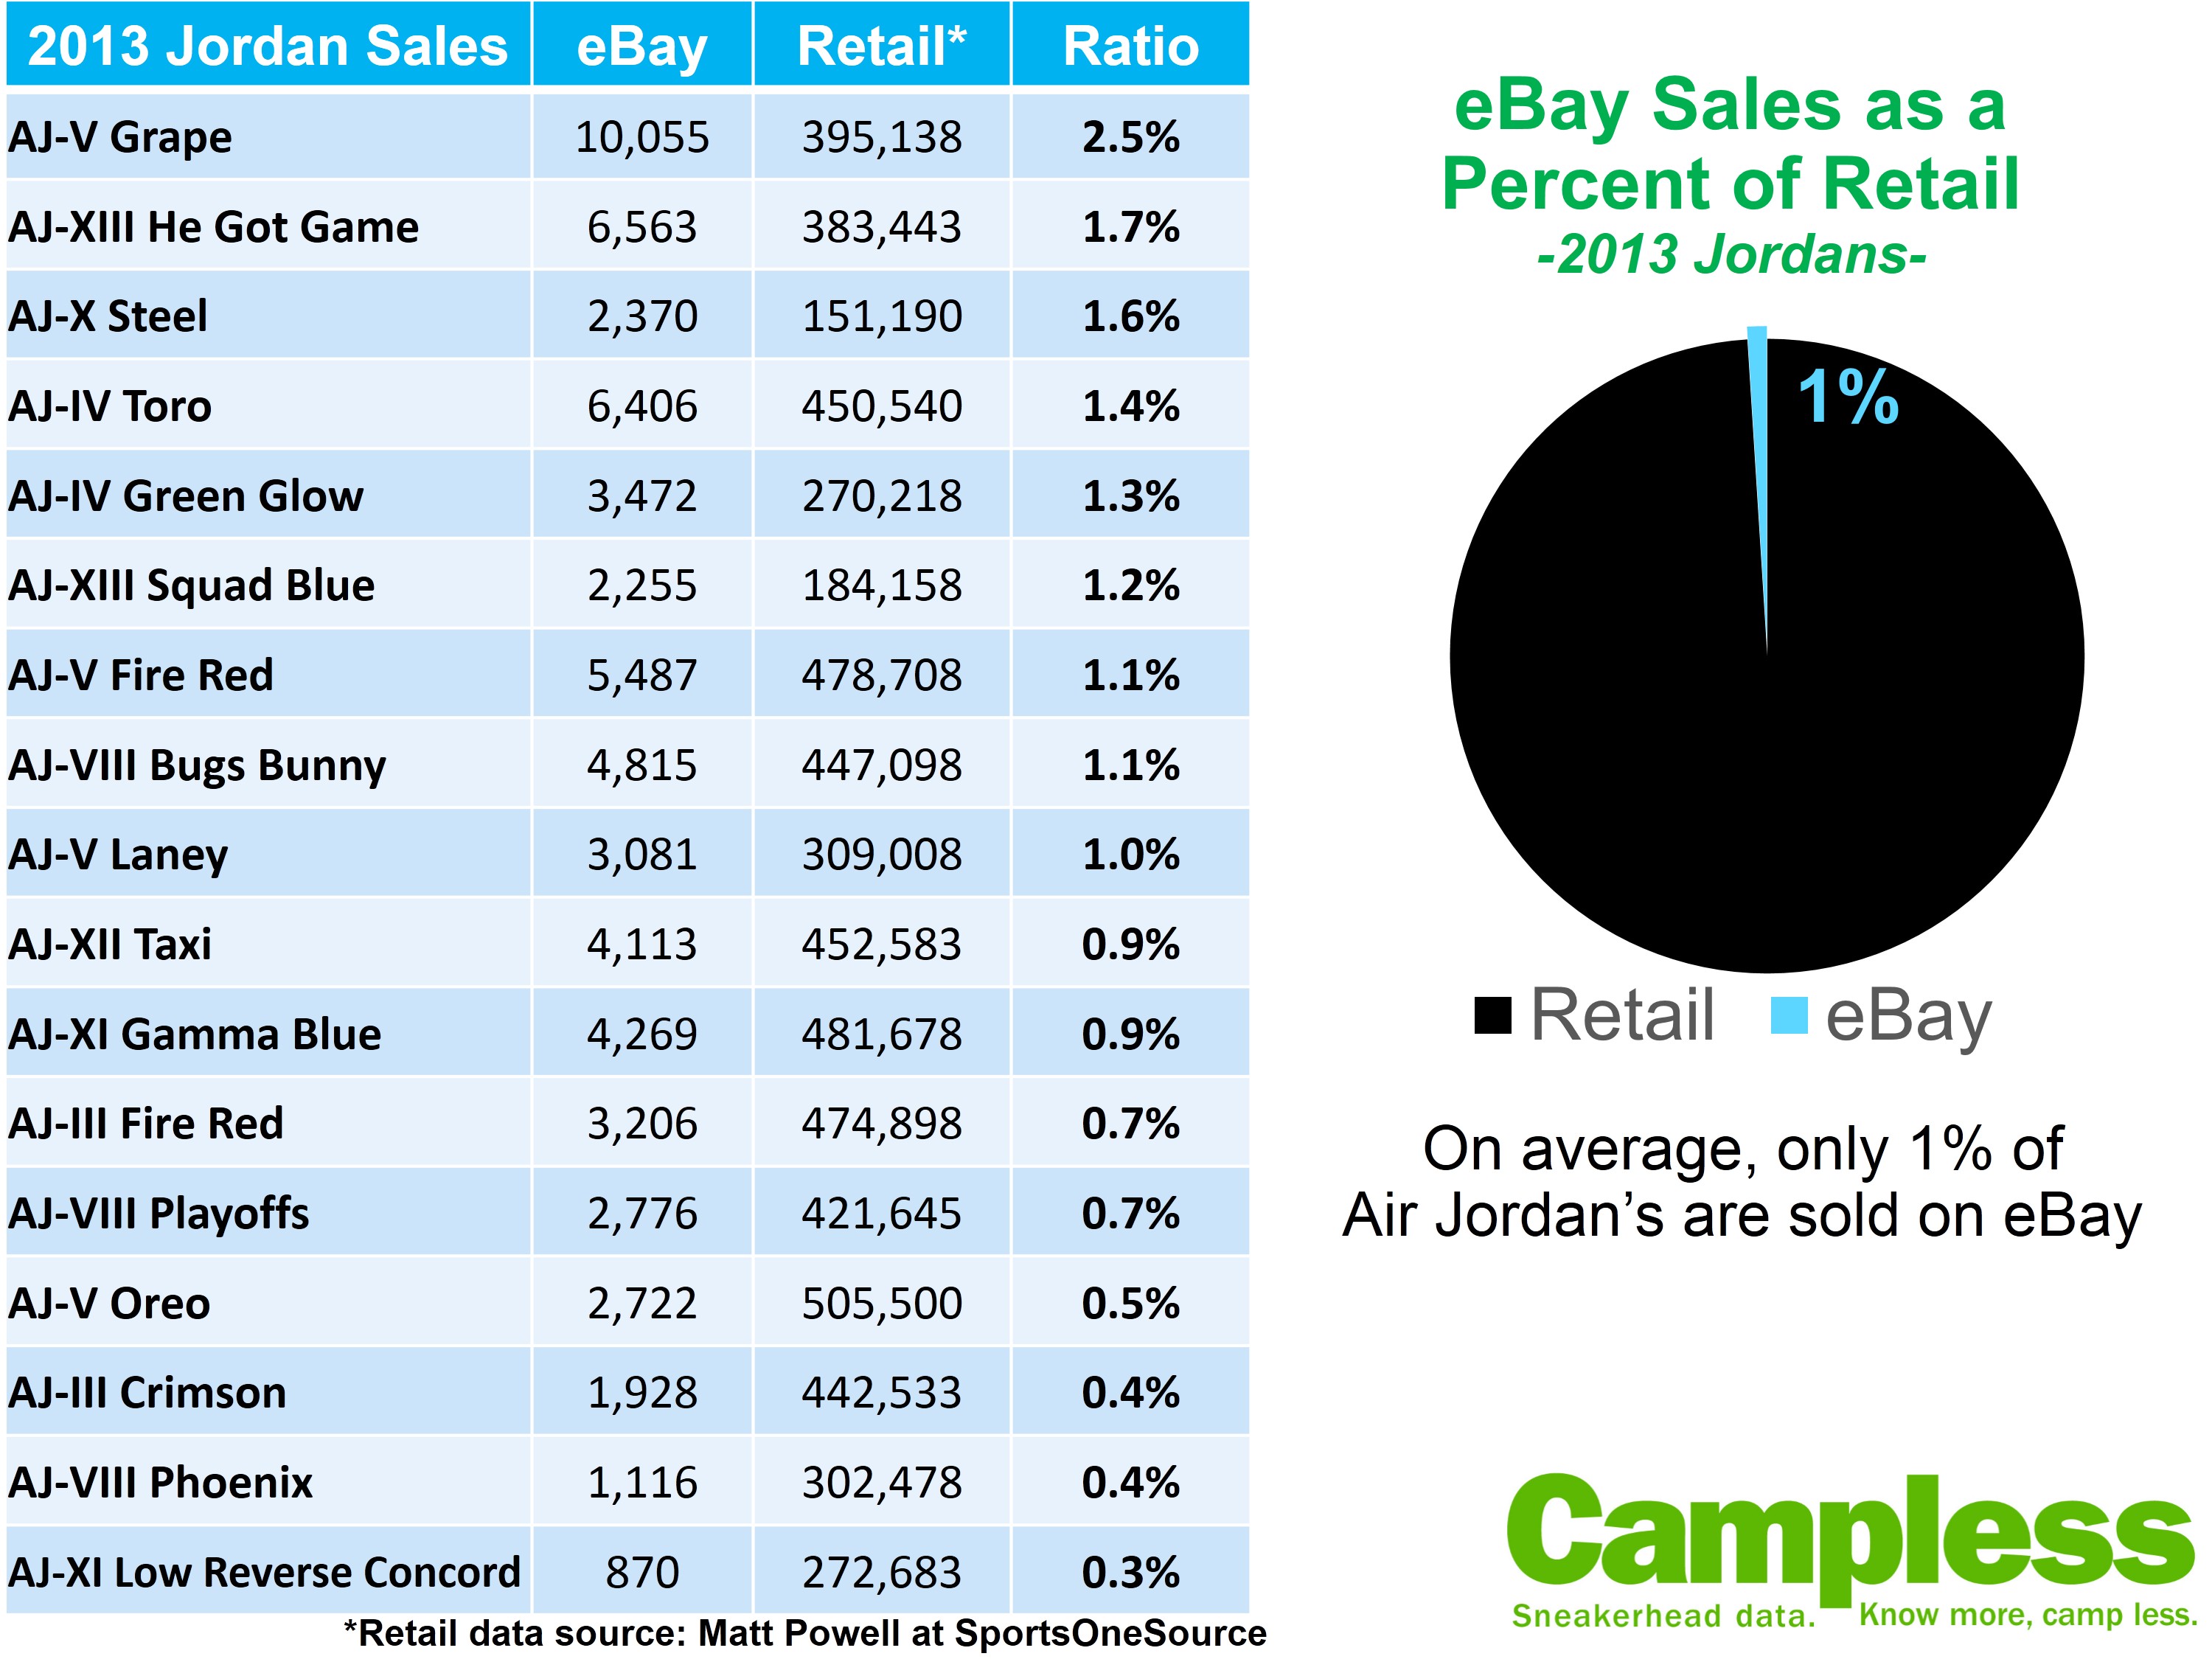 Only 1% of Jordans end up on eBay 